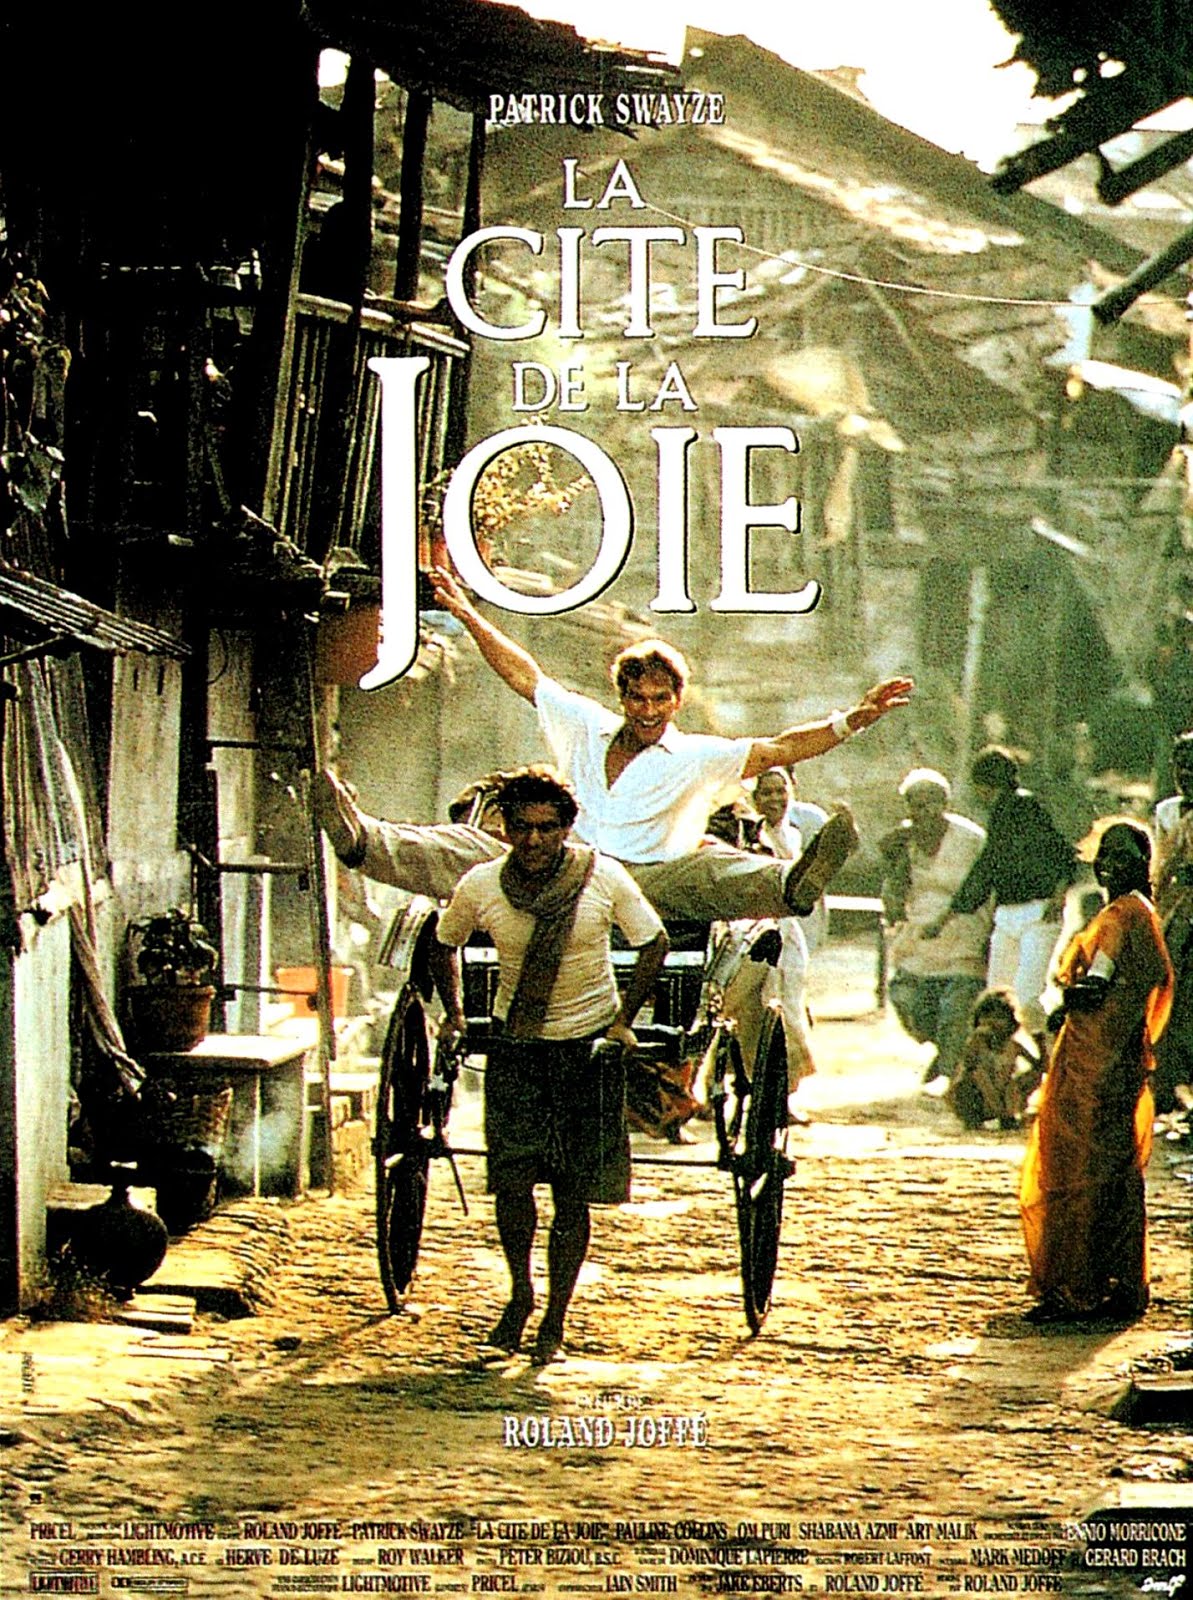 La cité de la joie (1991) Roland Joffé - City of joy (09.02.1991 / 16.05.1991)